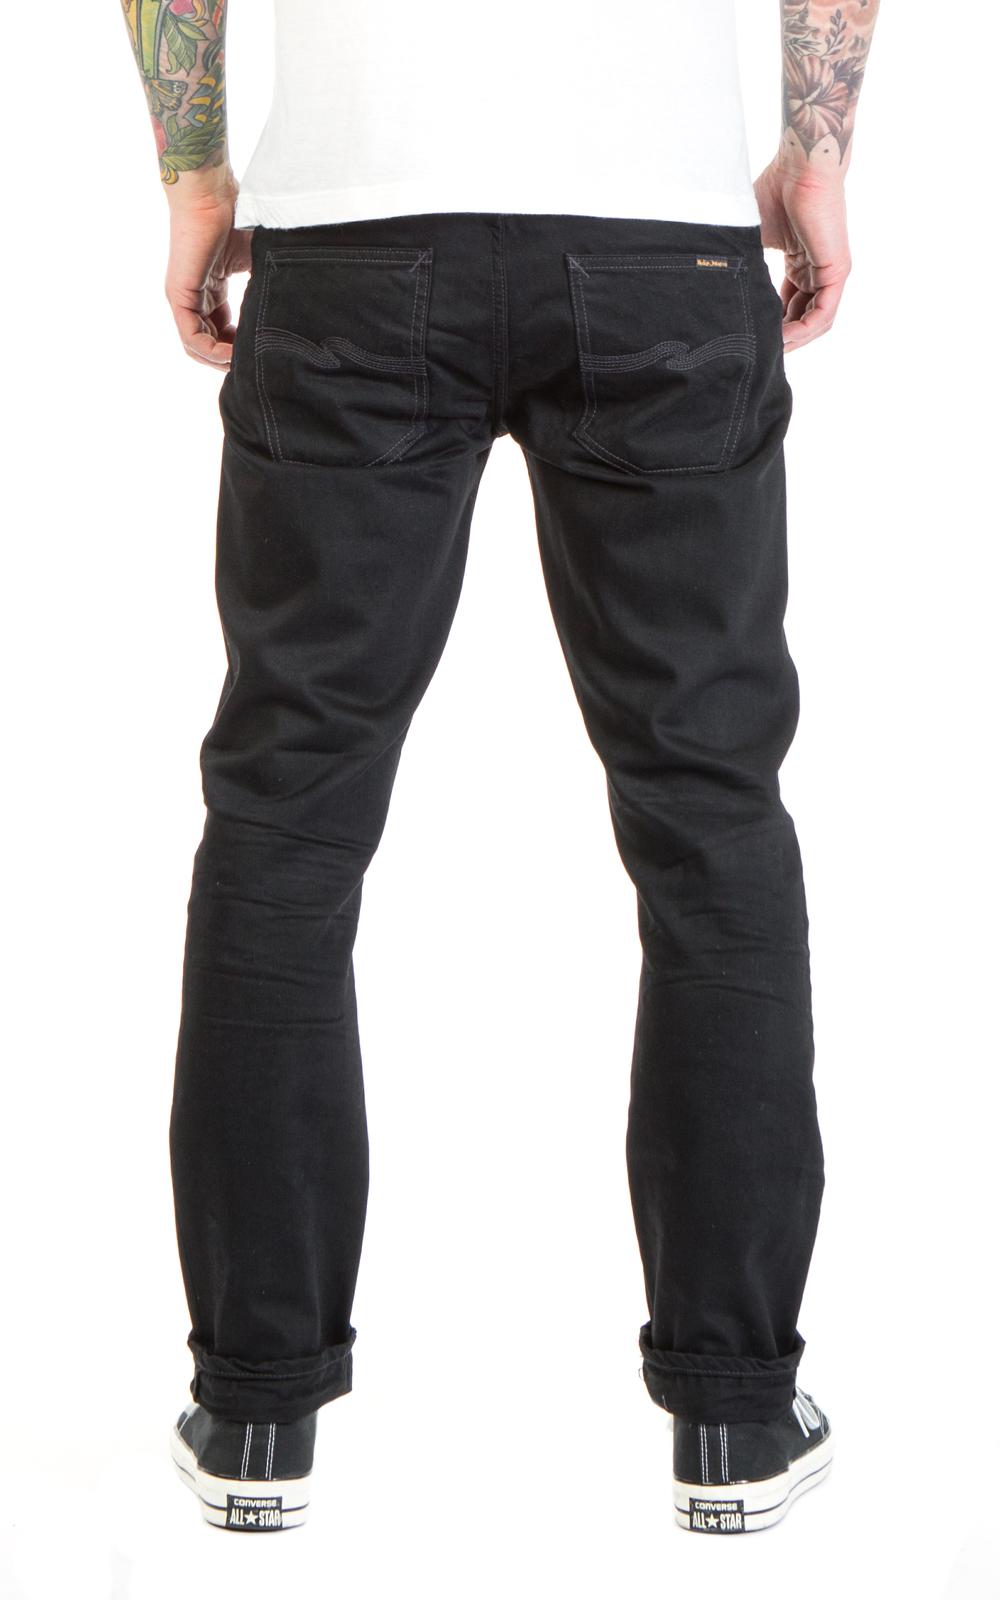 Nudie Men's Regular Fit Jeans Trousers Dude Dan Black Rider B-Stock New 